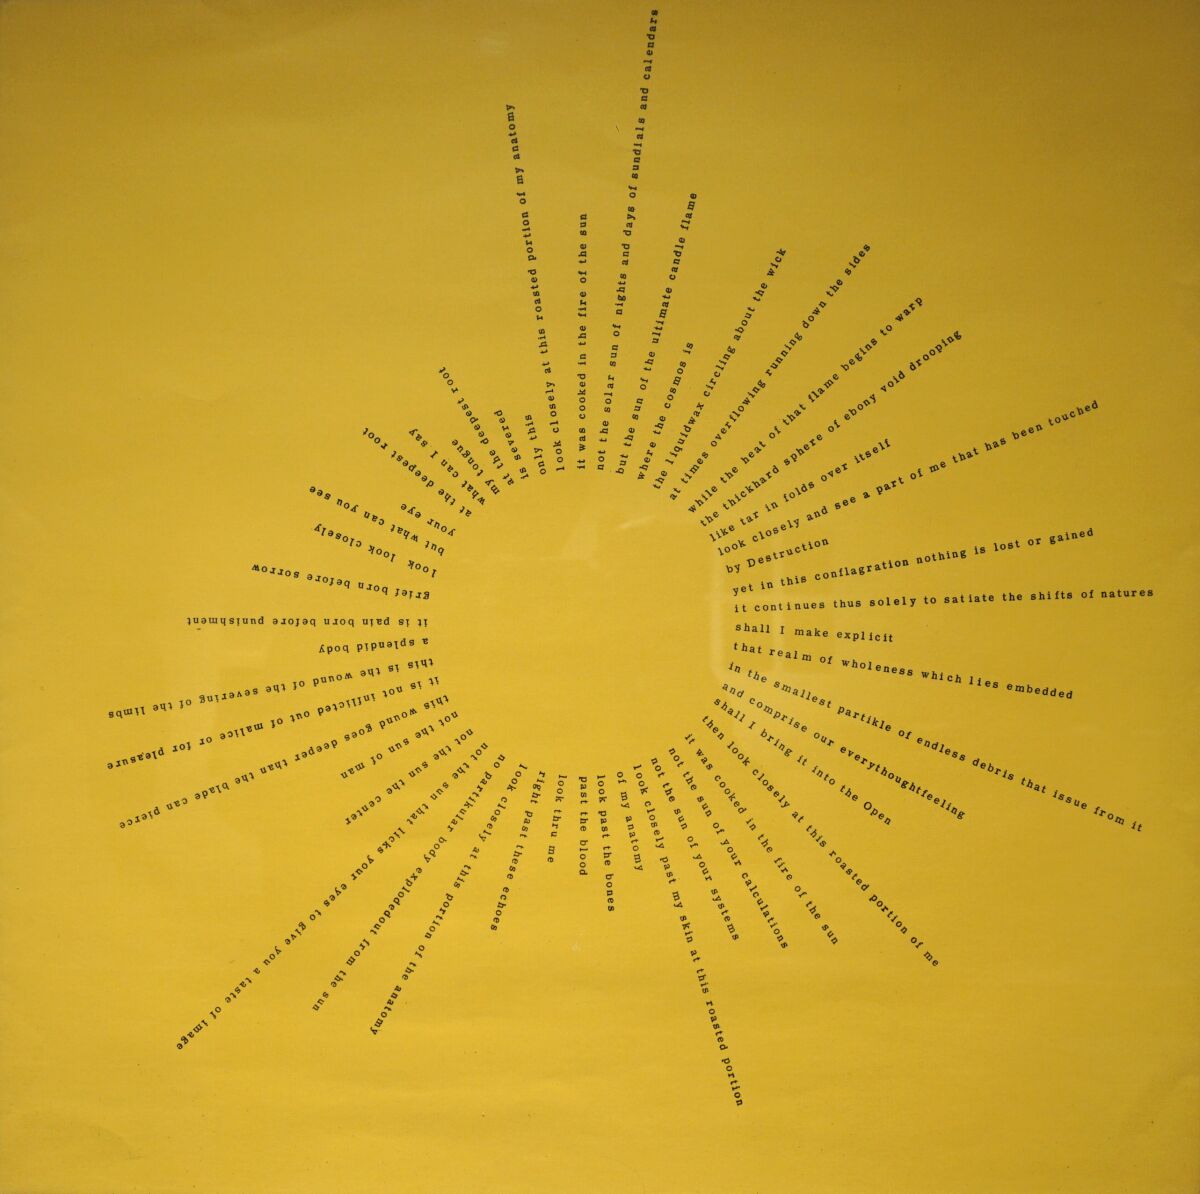 A poem written in the shape of a sun